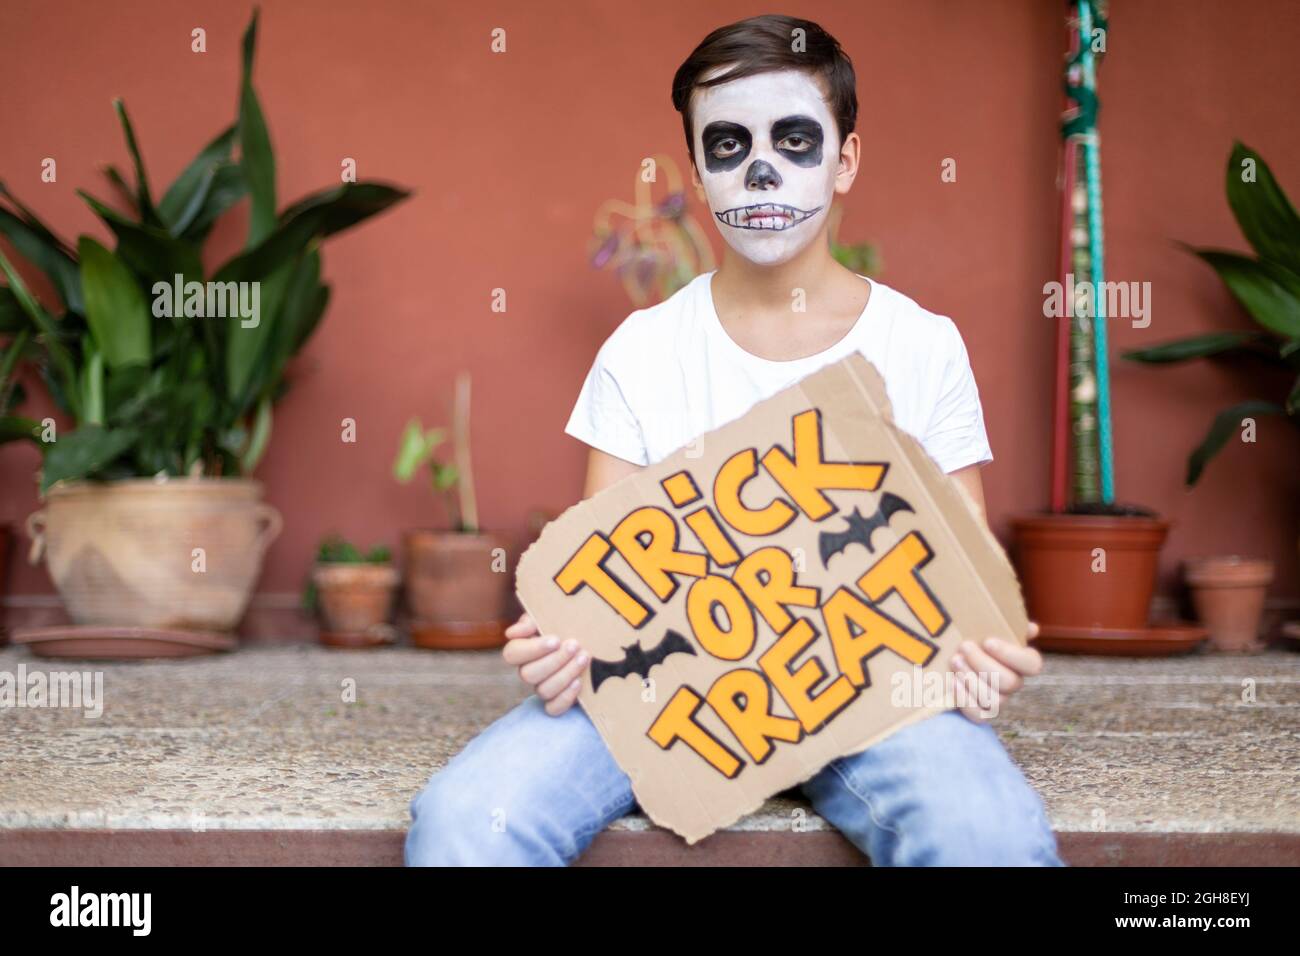 Adolescent à l'entrée de sa maison. Il a son visage composé et tient un signe avec le texte trick ou traiter. Halloween Celebration concept. Banque D'Images